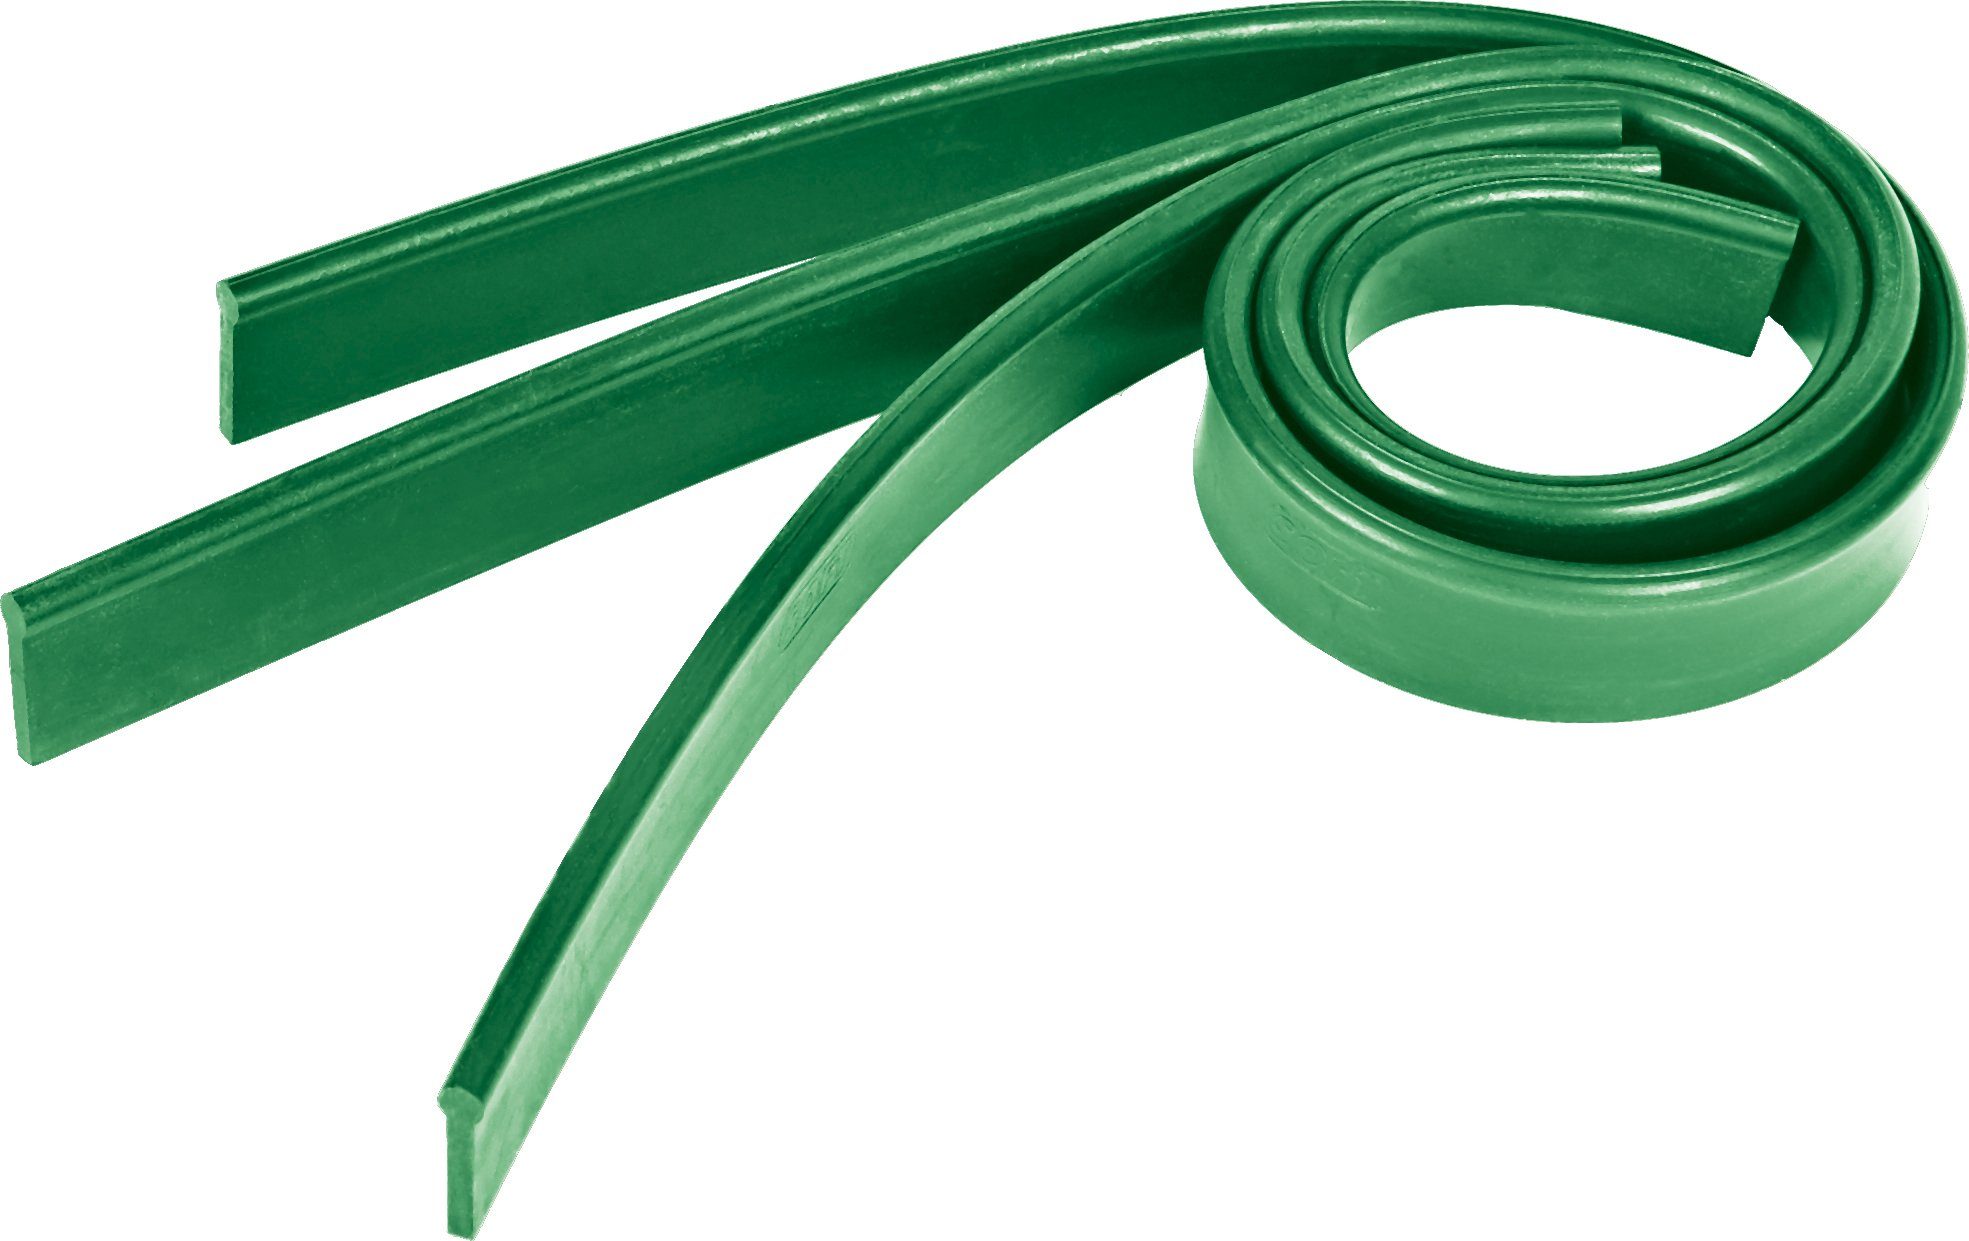 Wischergummi, grün, Black Unger 55 cm Series Power Wischerarmabzieher